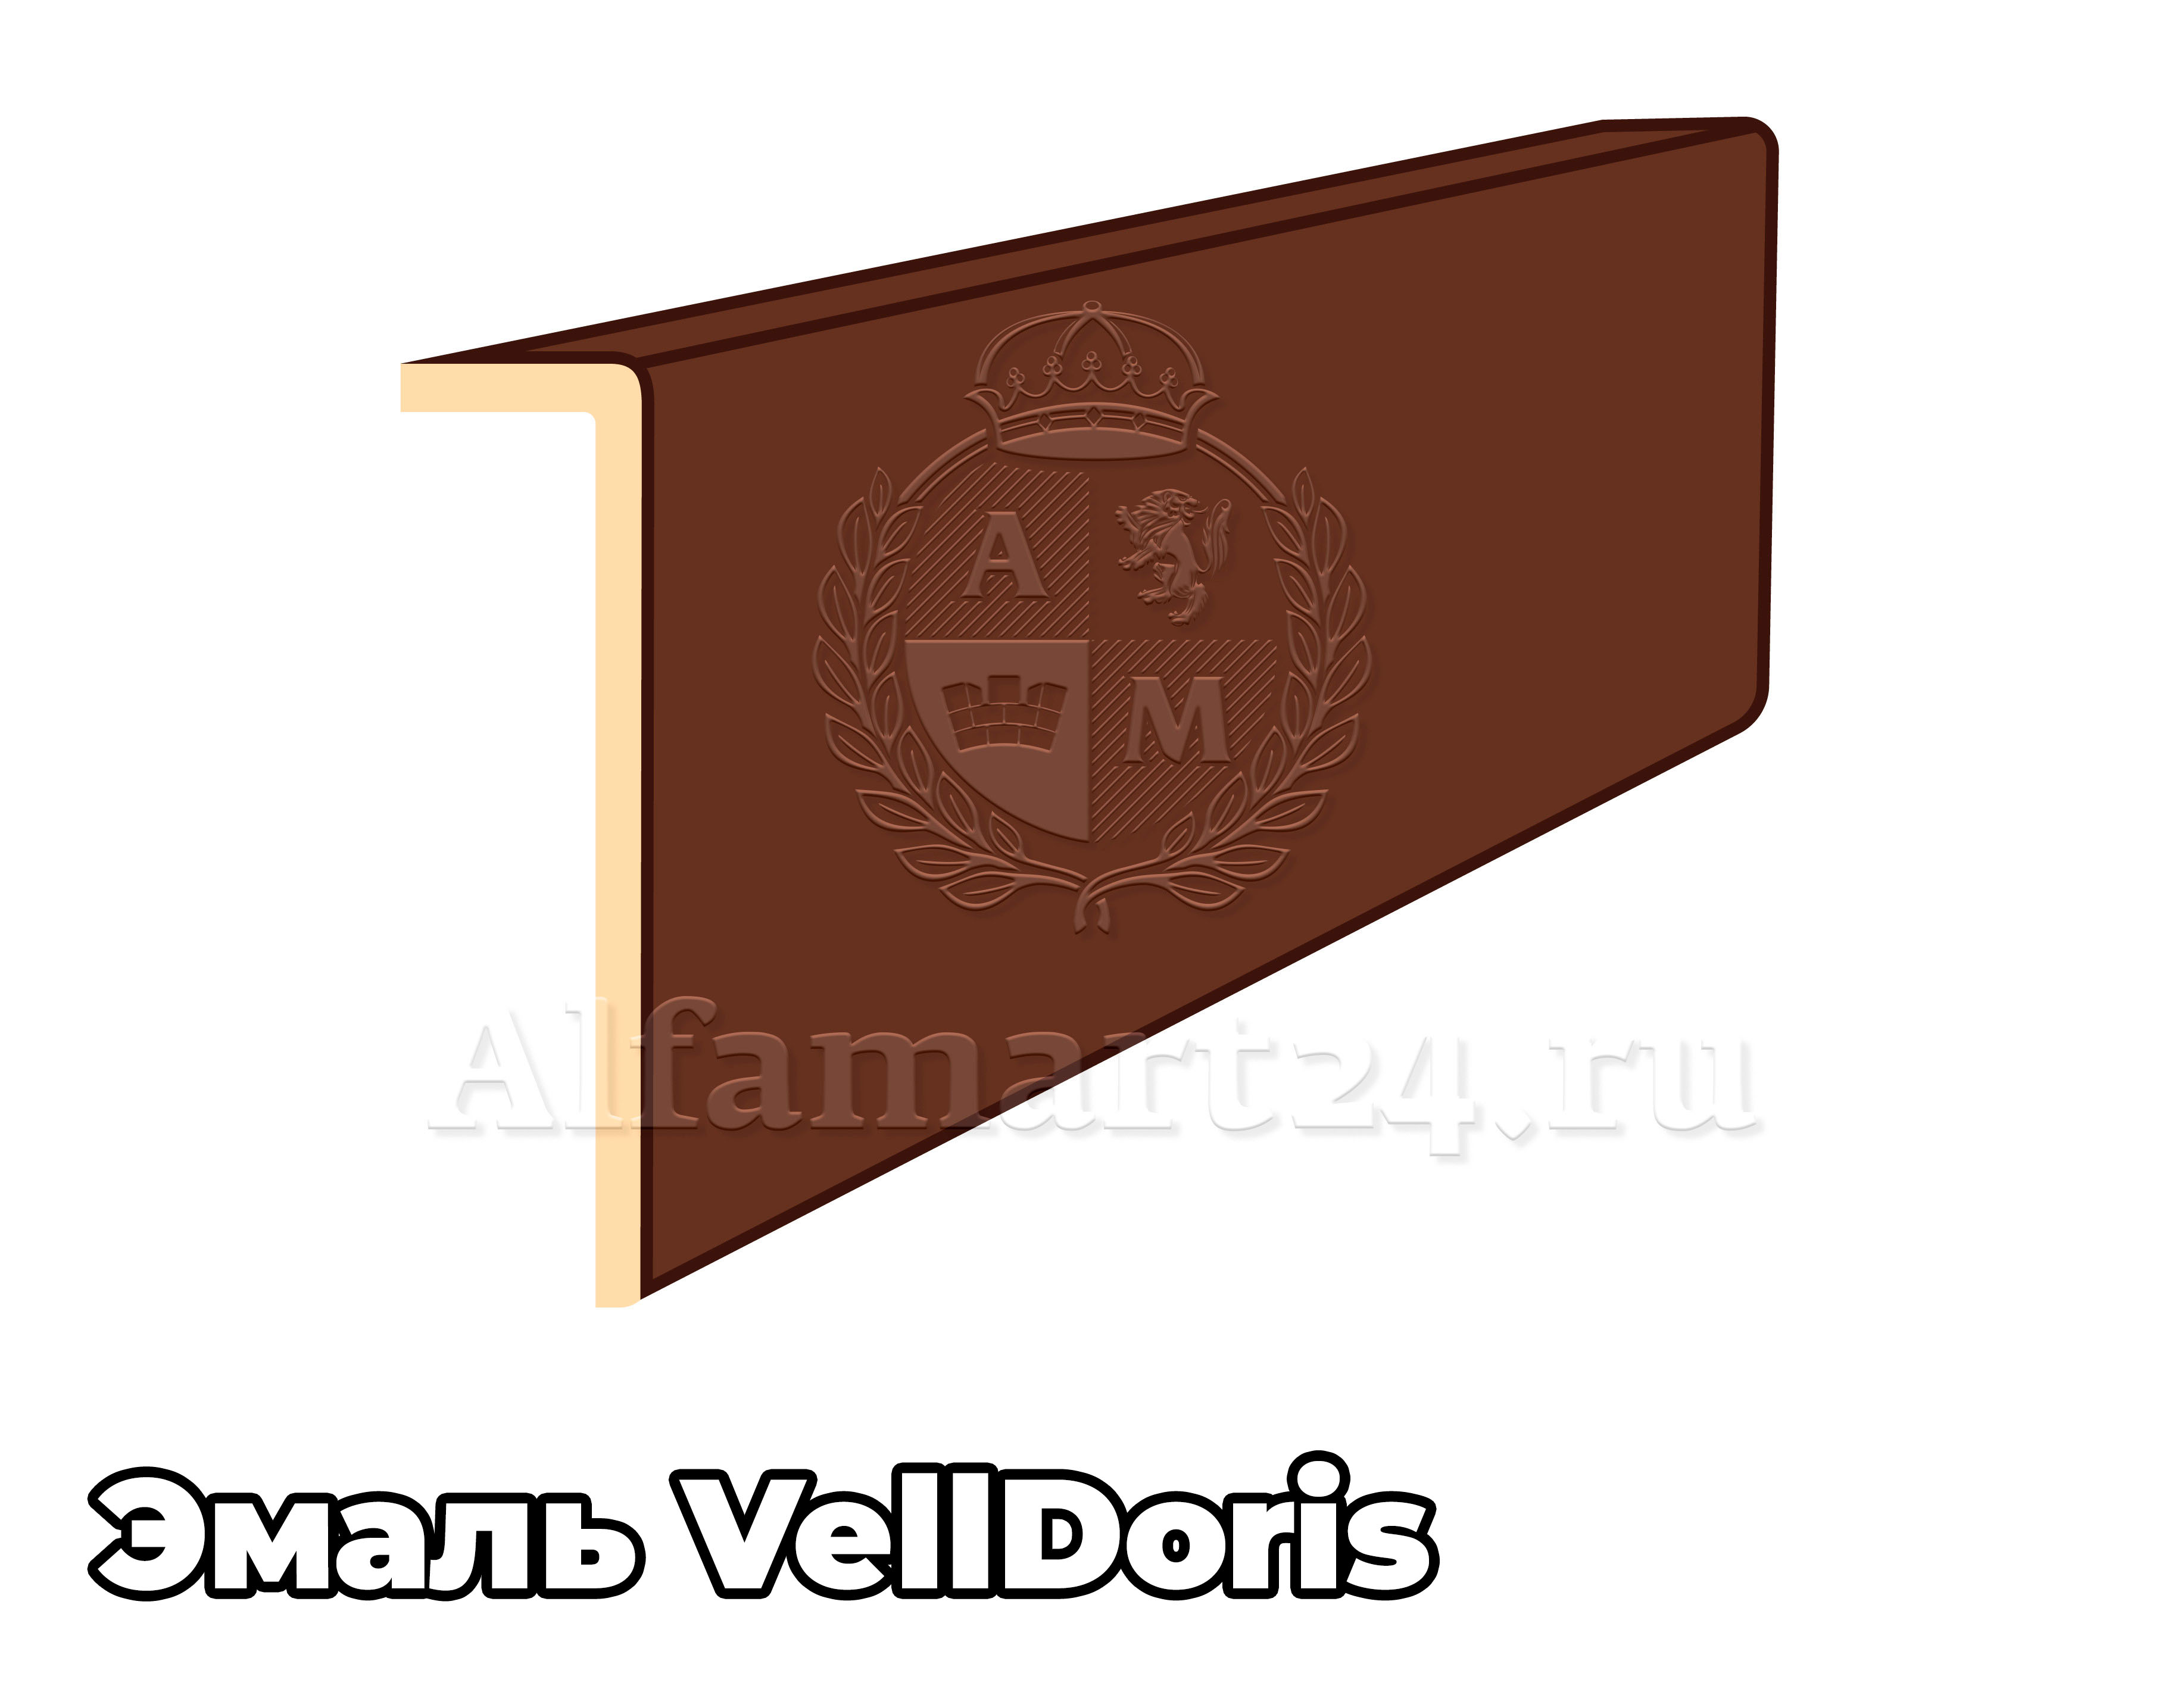 Наличник Velldoris эмаль (Т) 2150x70x25 мм ( В цвет двери ) - 1 штука